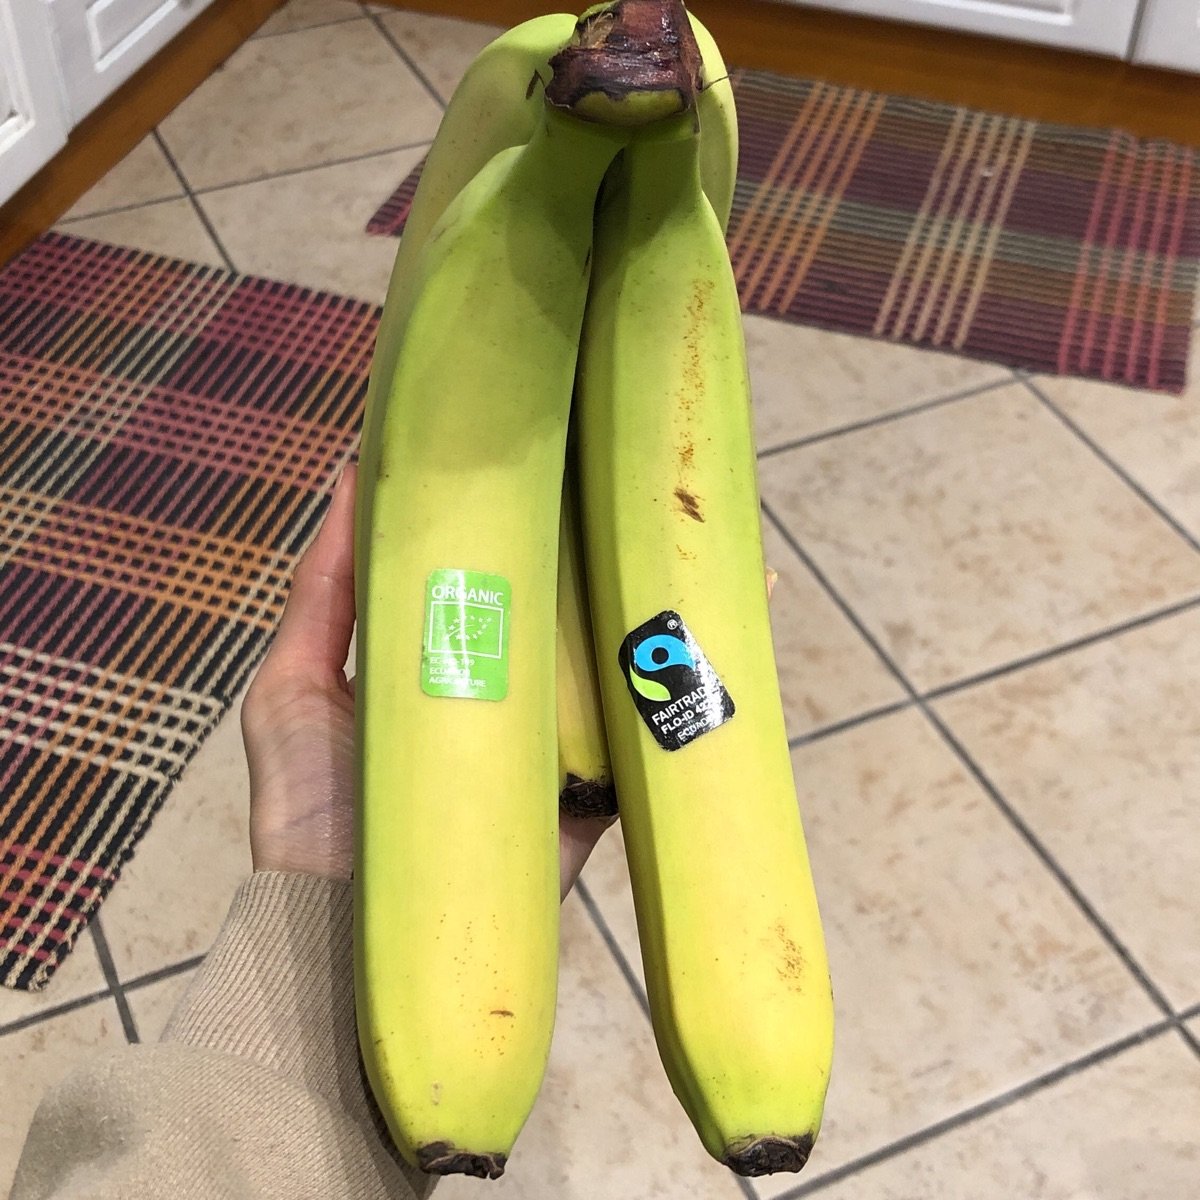 Fairtrade Original Banane bio Reviews abillion 